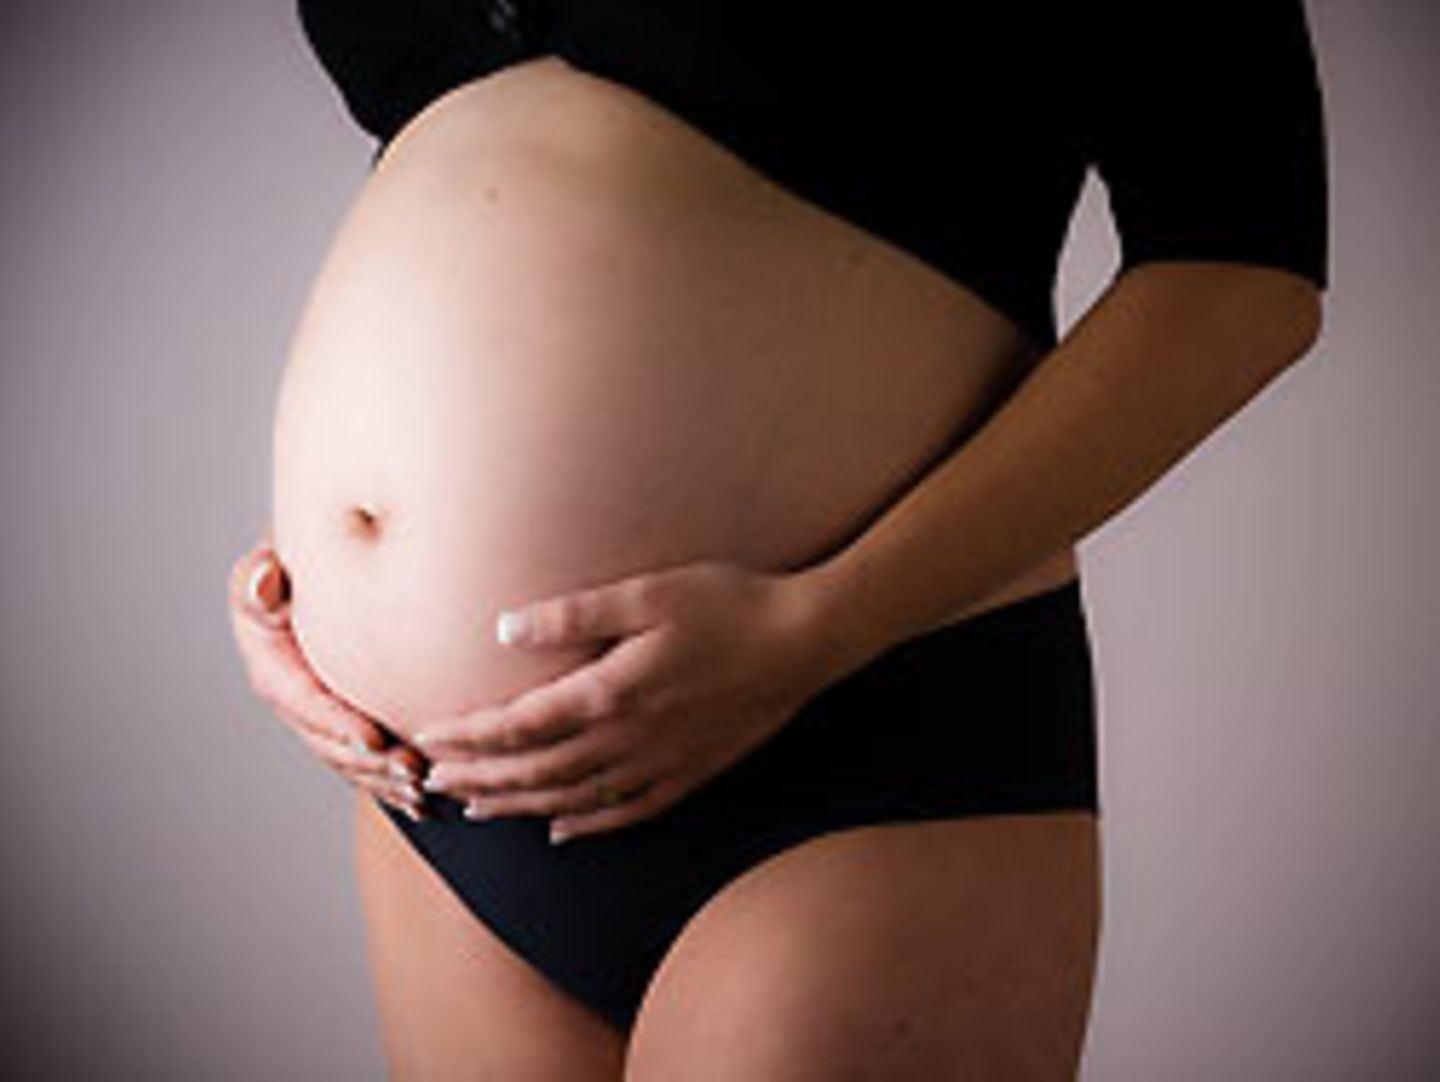 Bei einer künstlichen Befruchtung kommt es häufiger zu Mehrlingsschwangerschaften